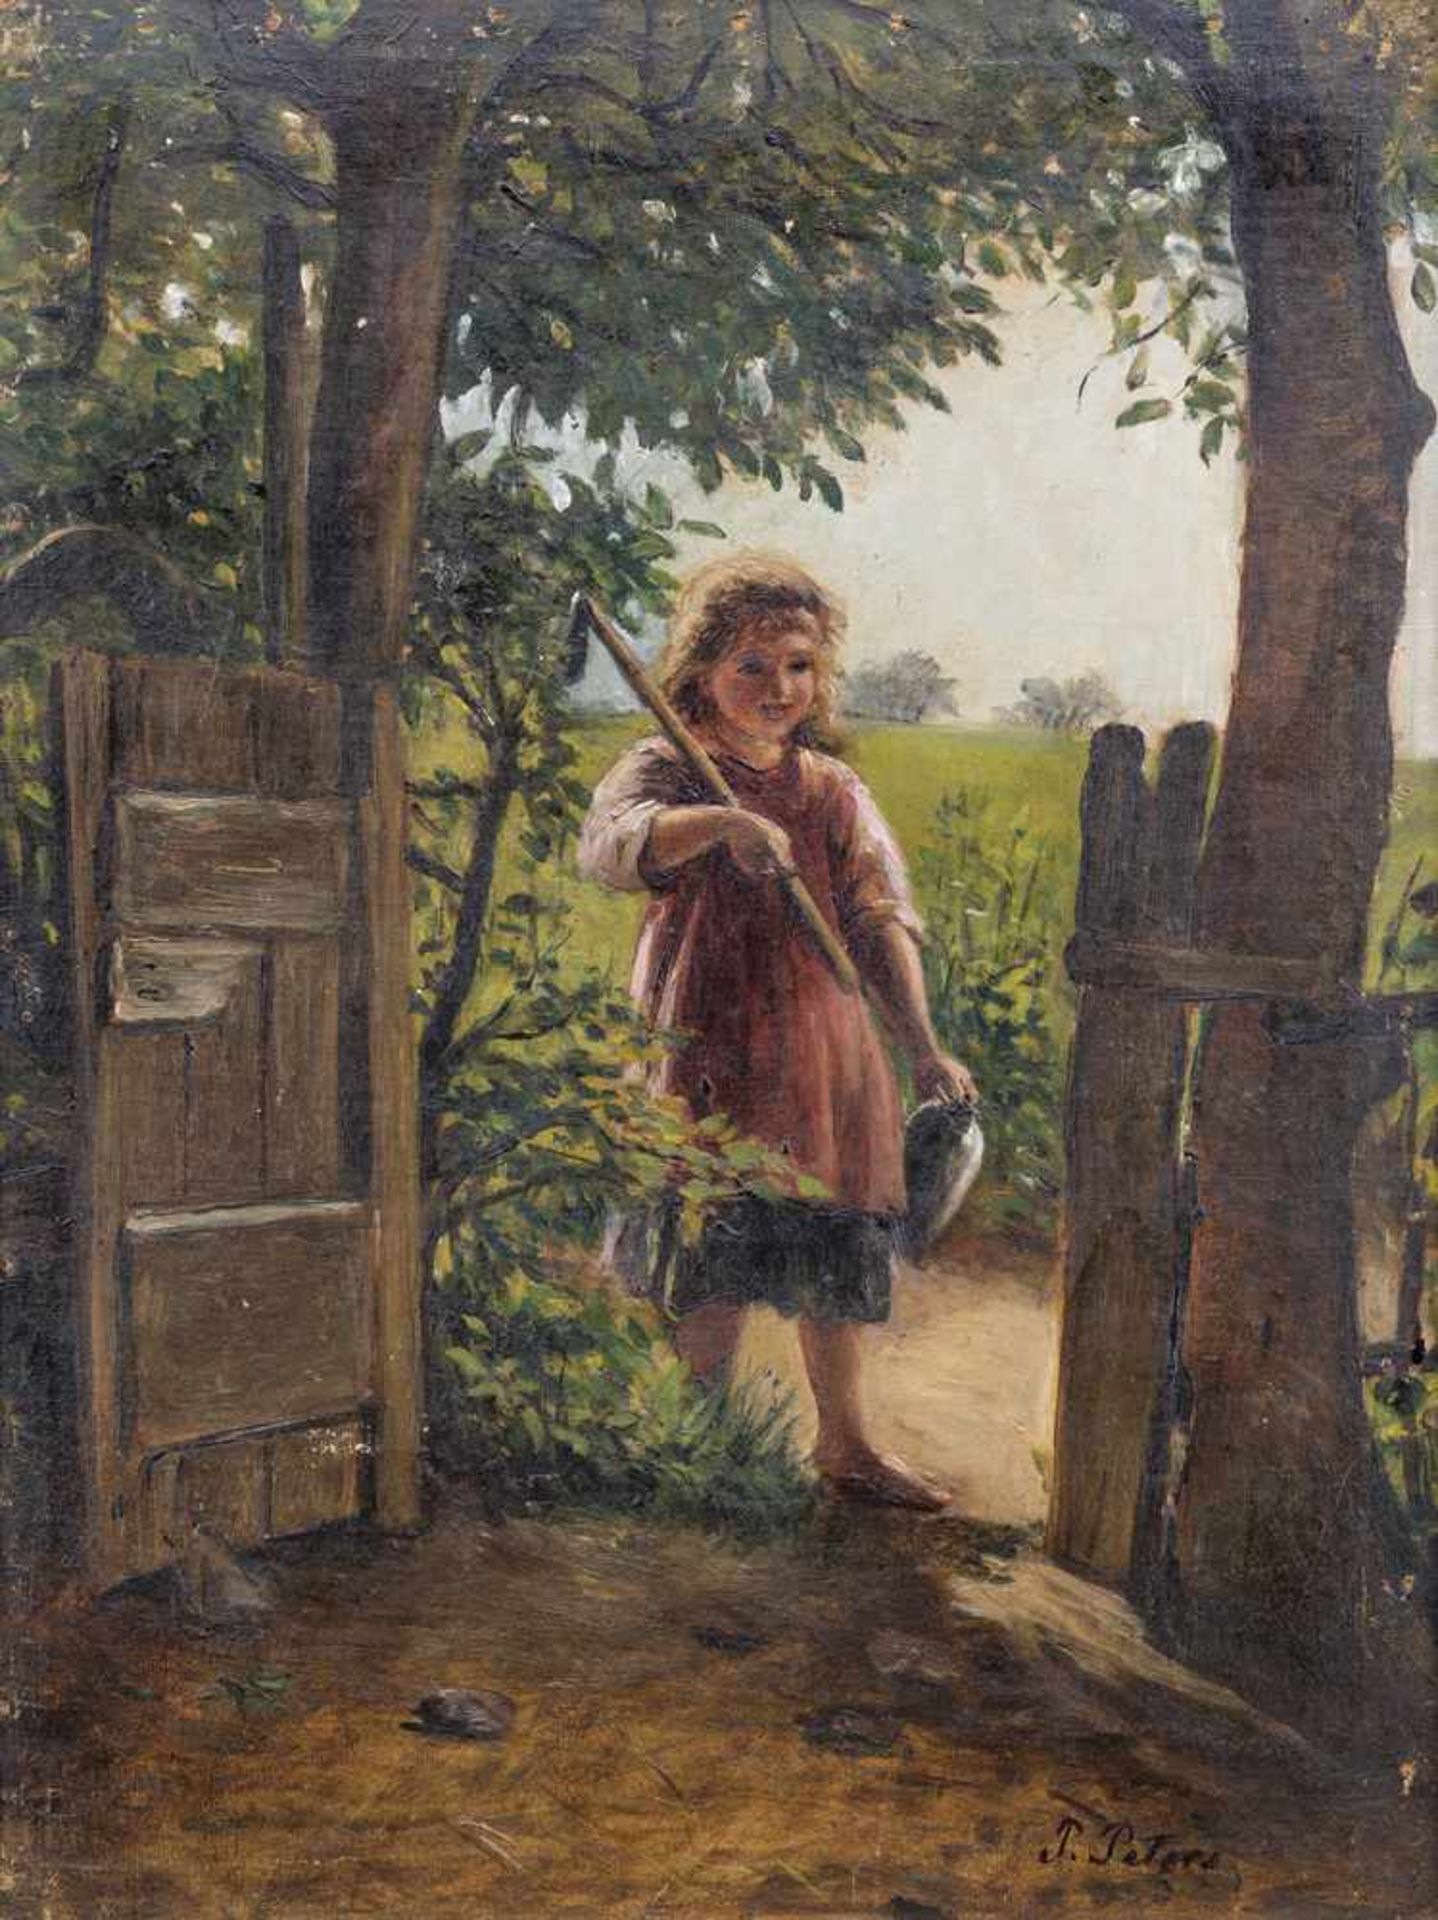 Peters, PietronellaStuttgart 1848 - 192442 x 32 cmJunges Mädchen am Gartentor. Öl/Lwd./Karton, unten